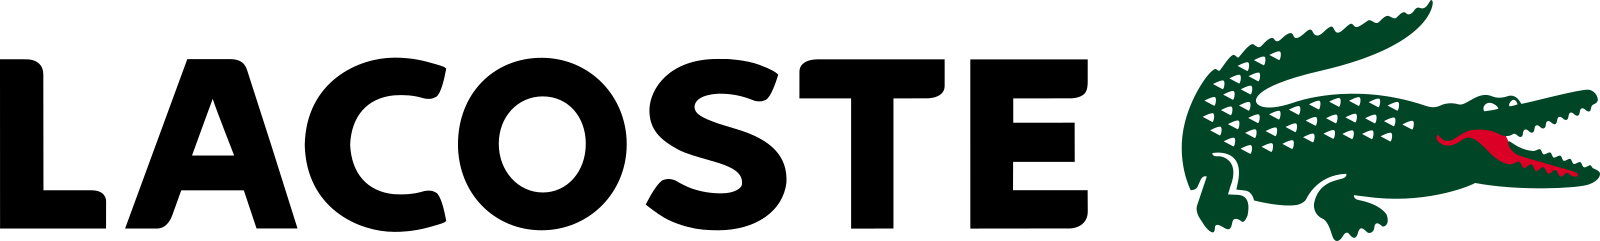 lacoste logo 5 - Lacoste Logo